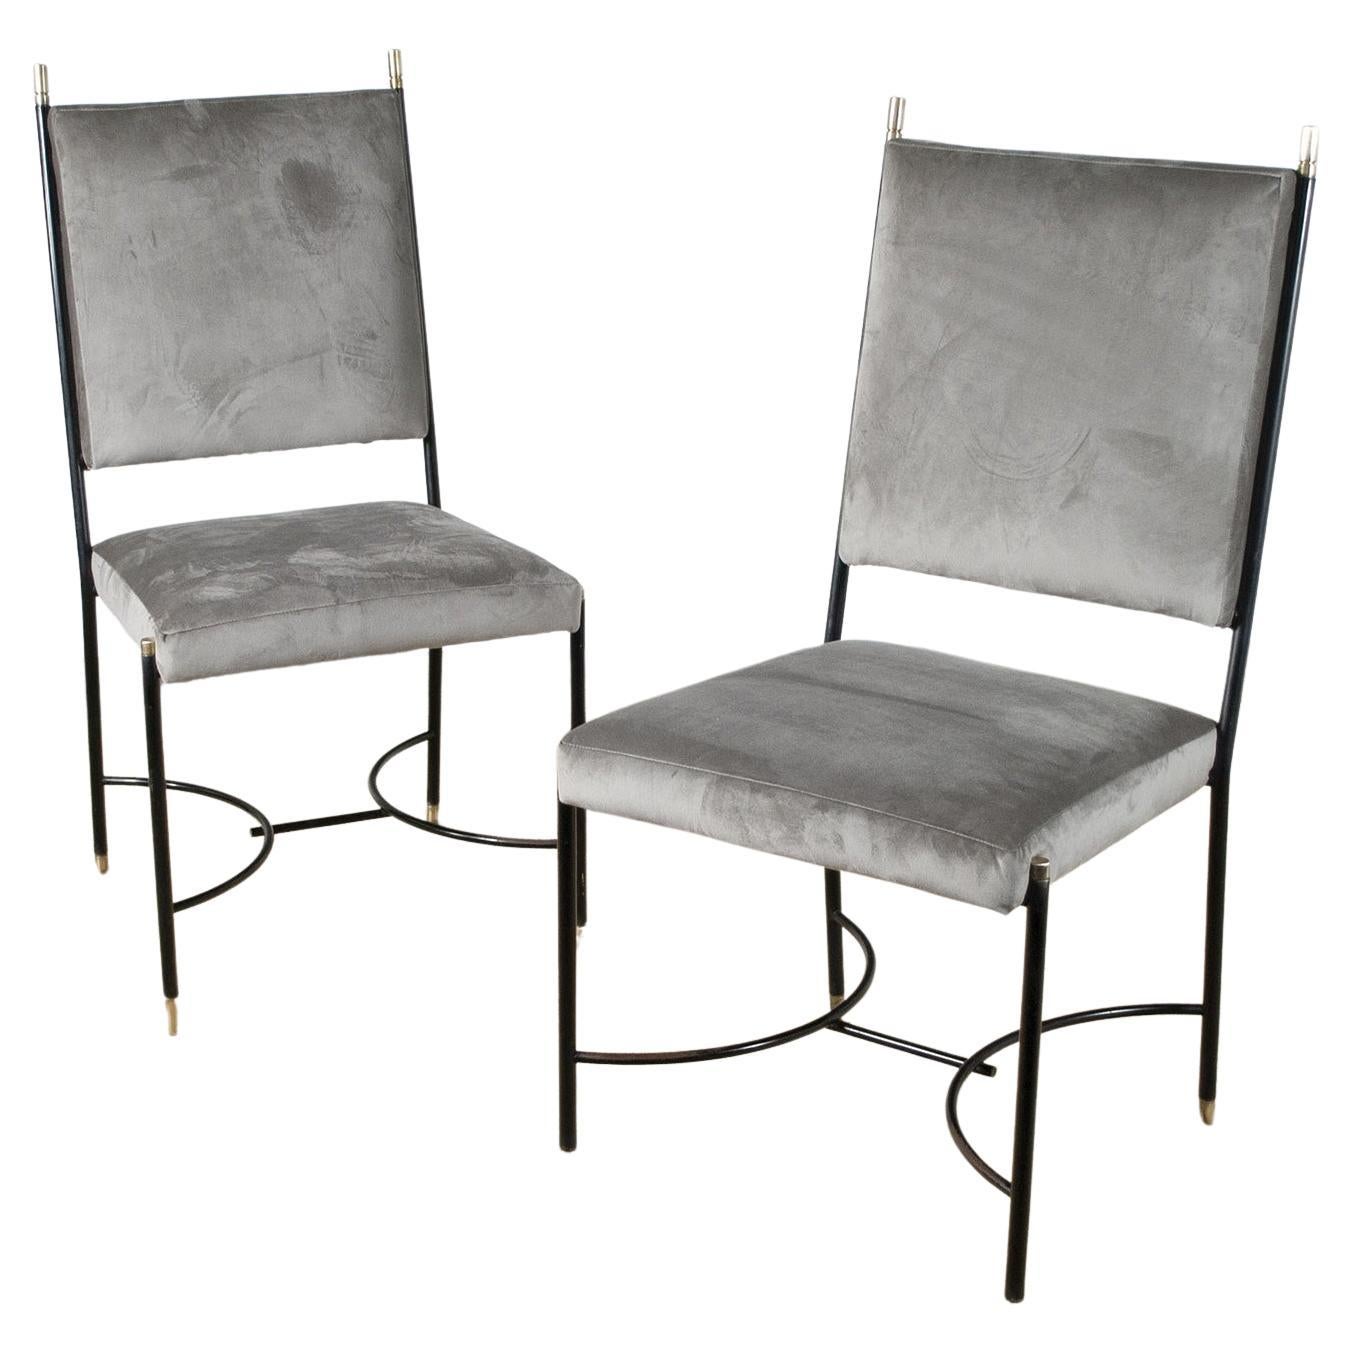 Satz von zwei Stühlen im Regency-Stil von Luigi Caccia Dominioni Eisenrahmen mit Messingbeschlägen in grauem Samt 1960er Jahre.